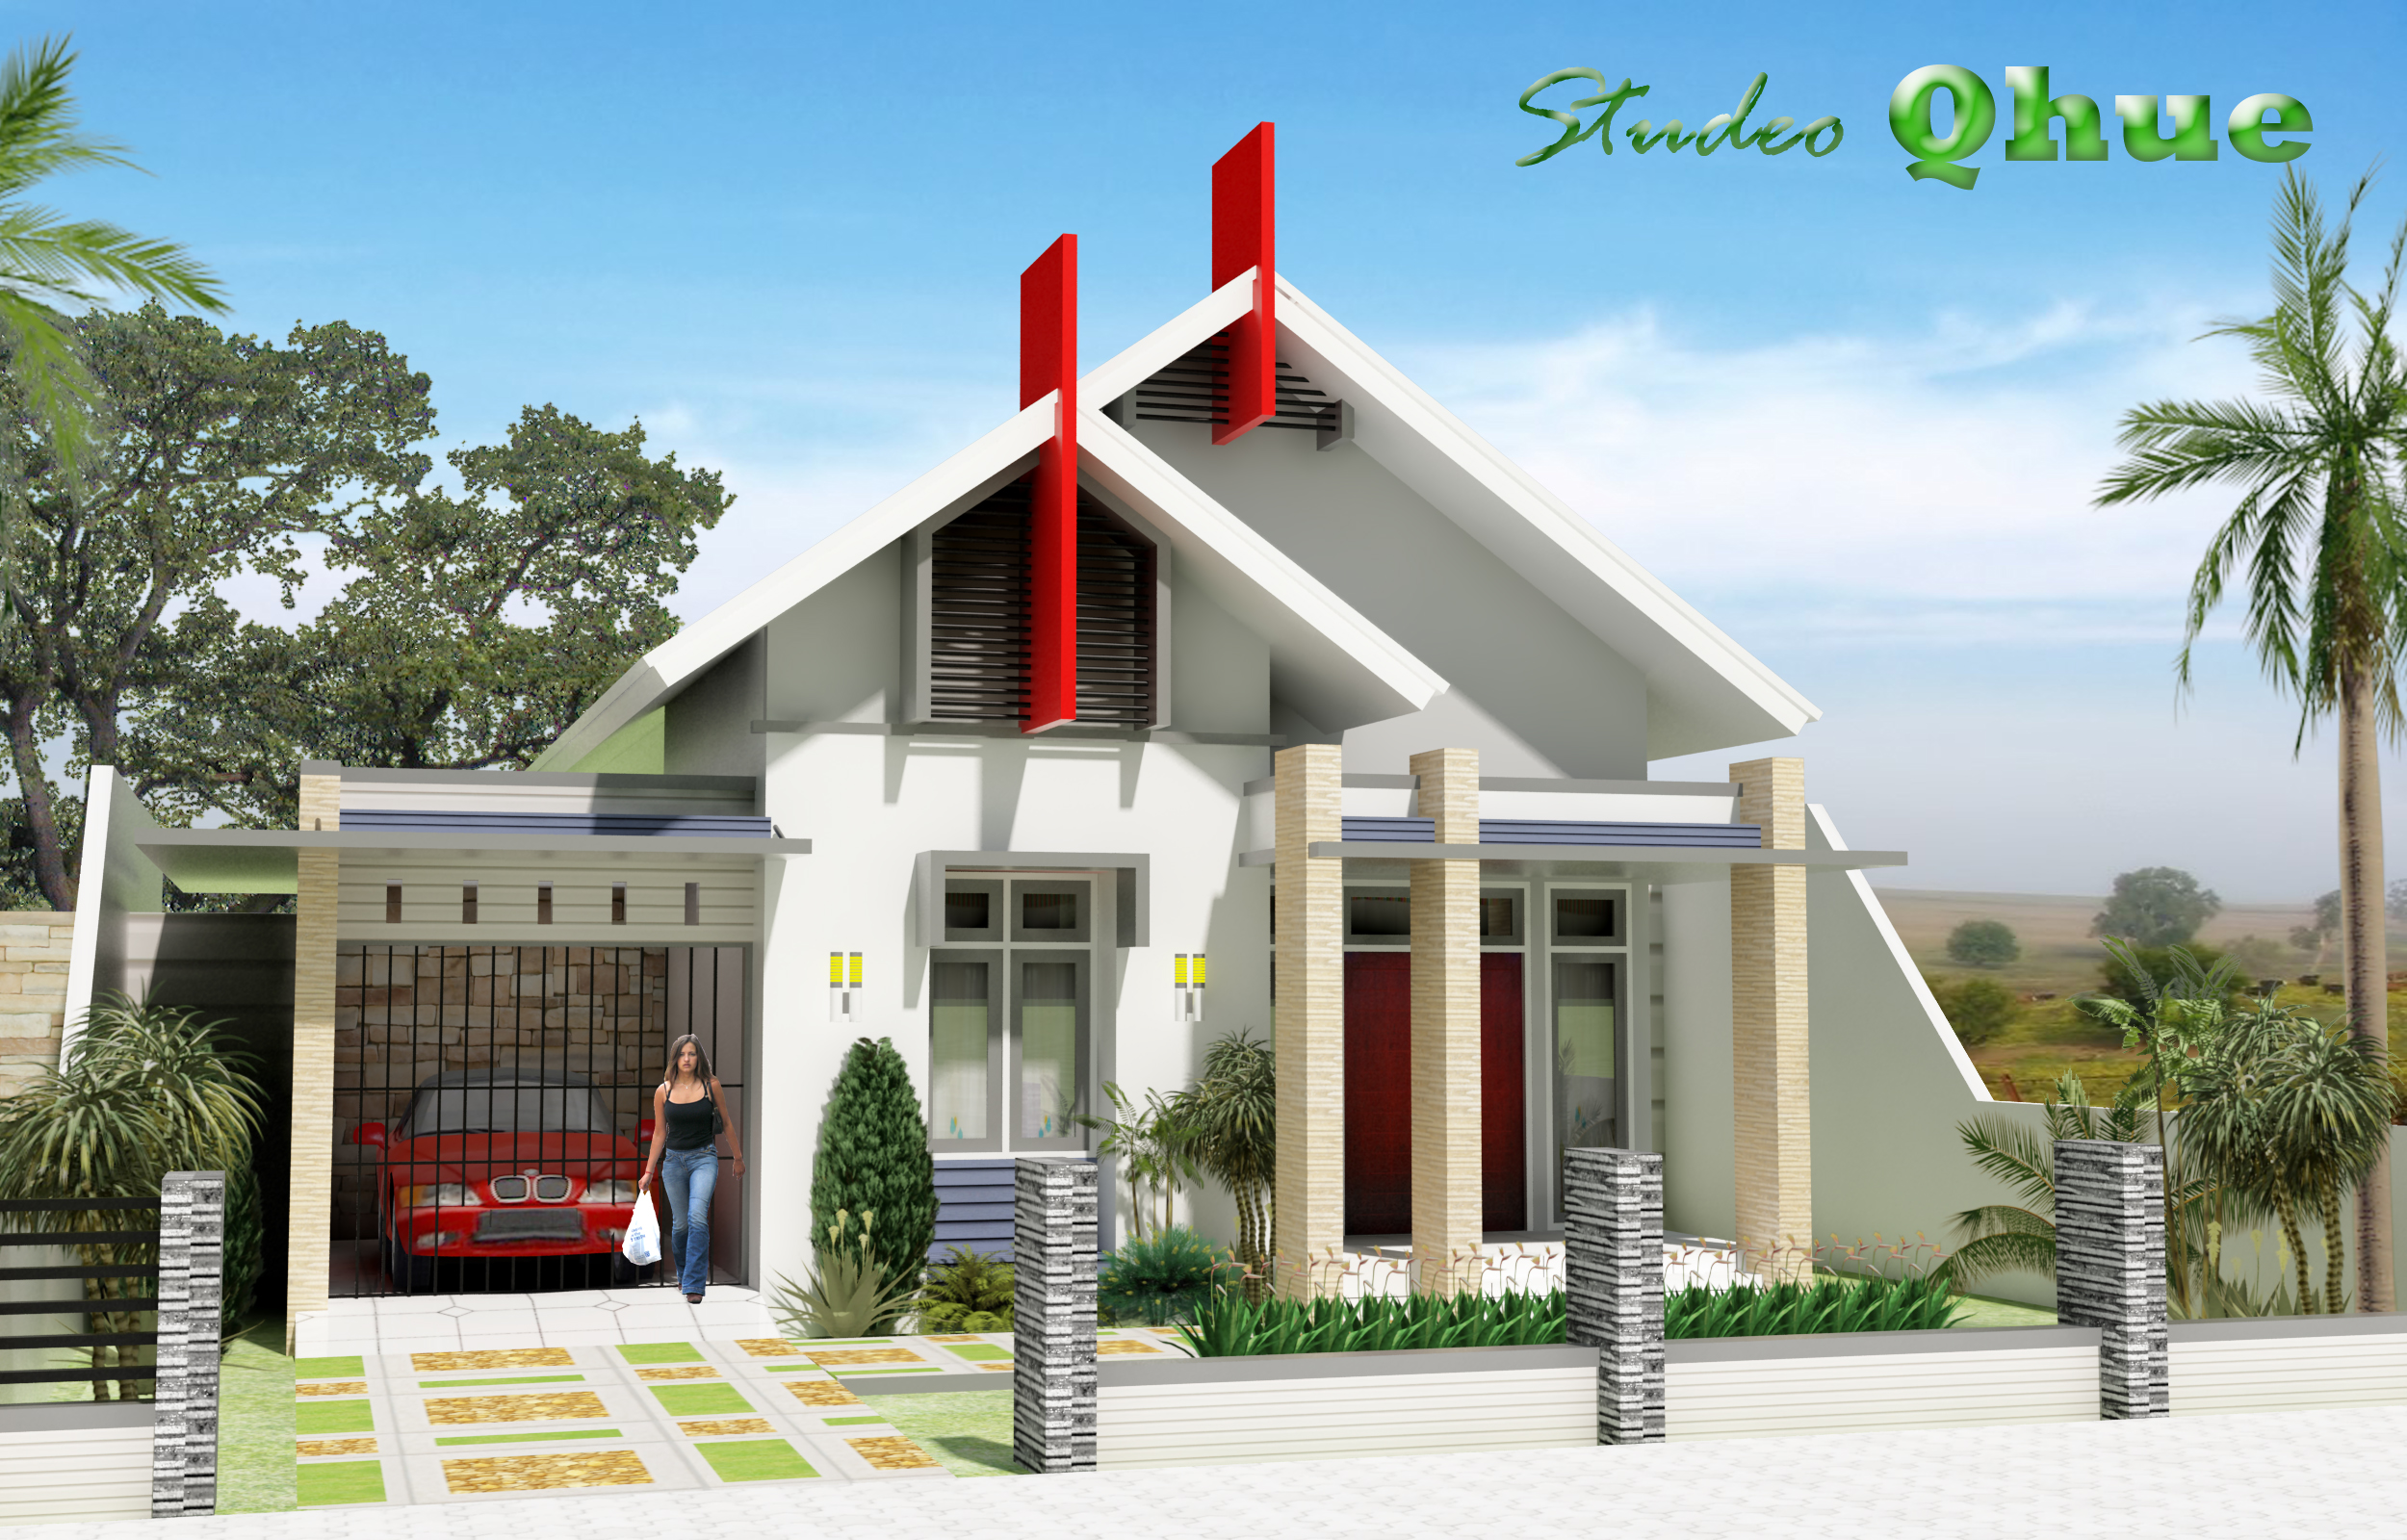 Desain Rumah Modern Tropis  Studeo Qhue